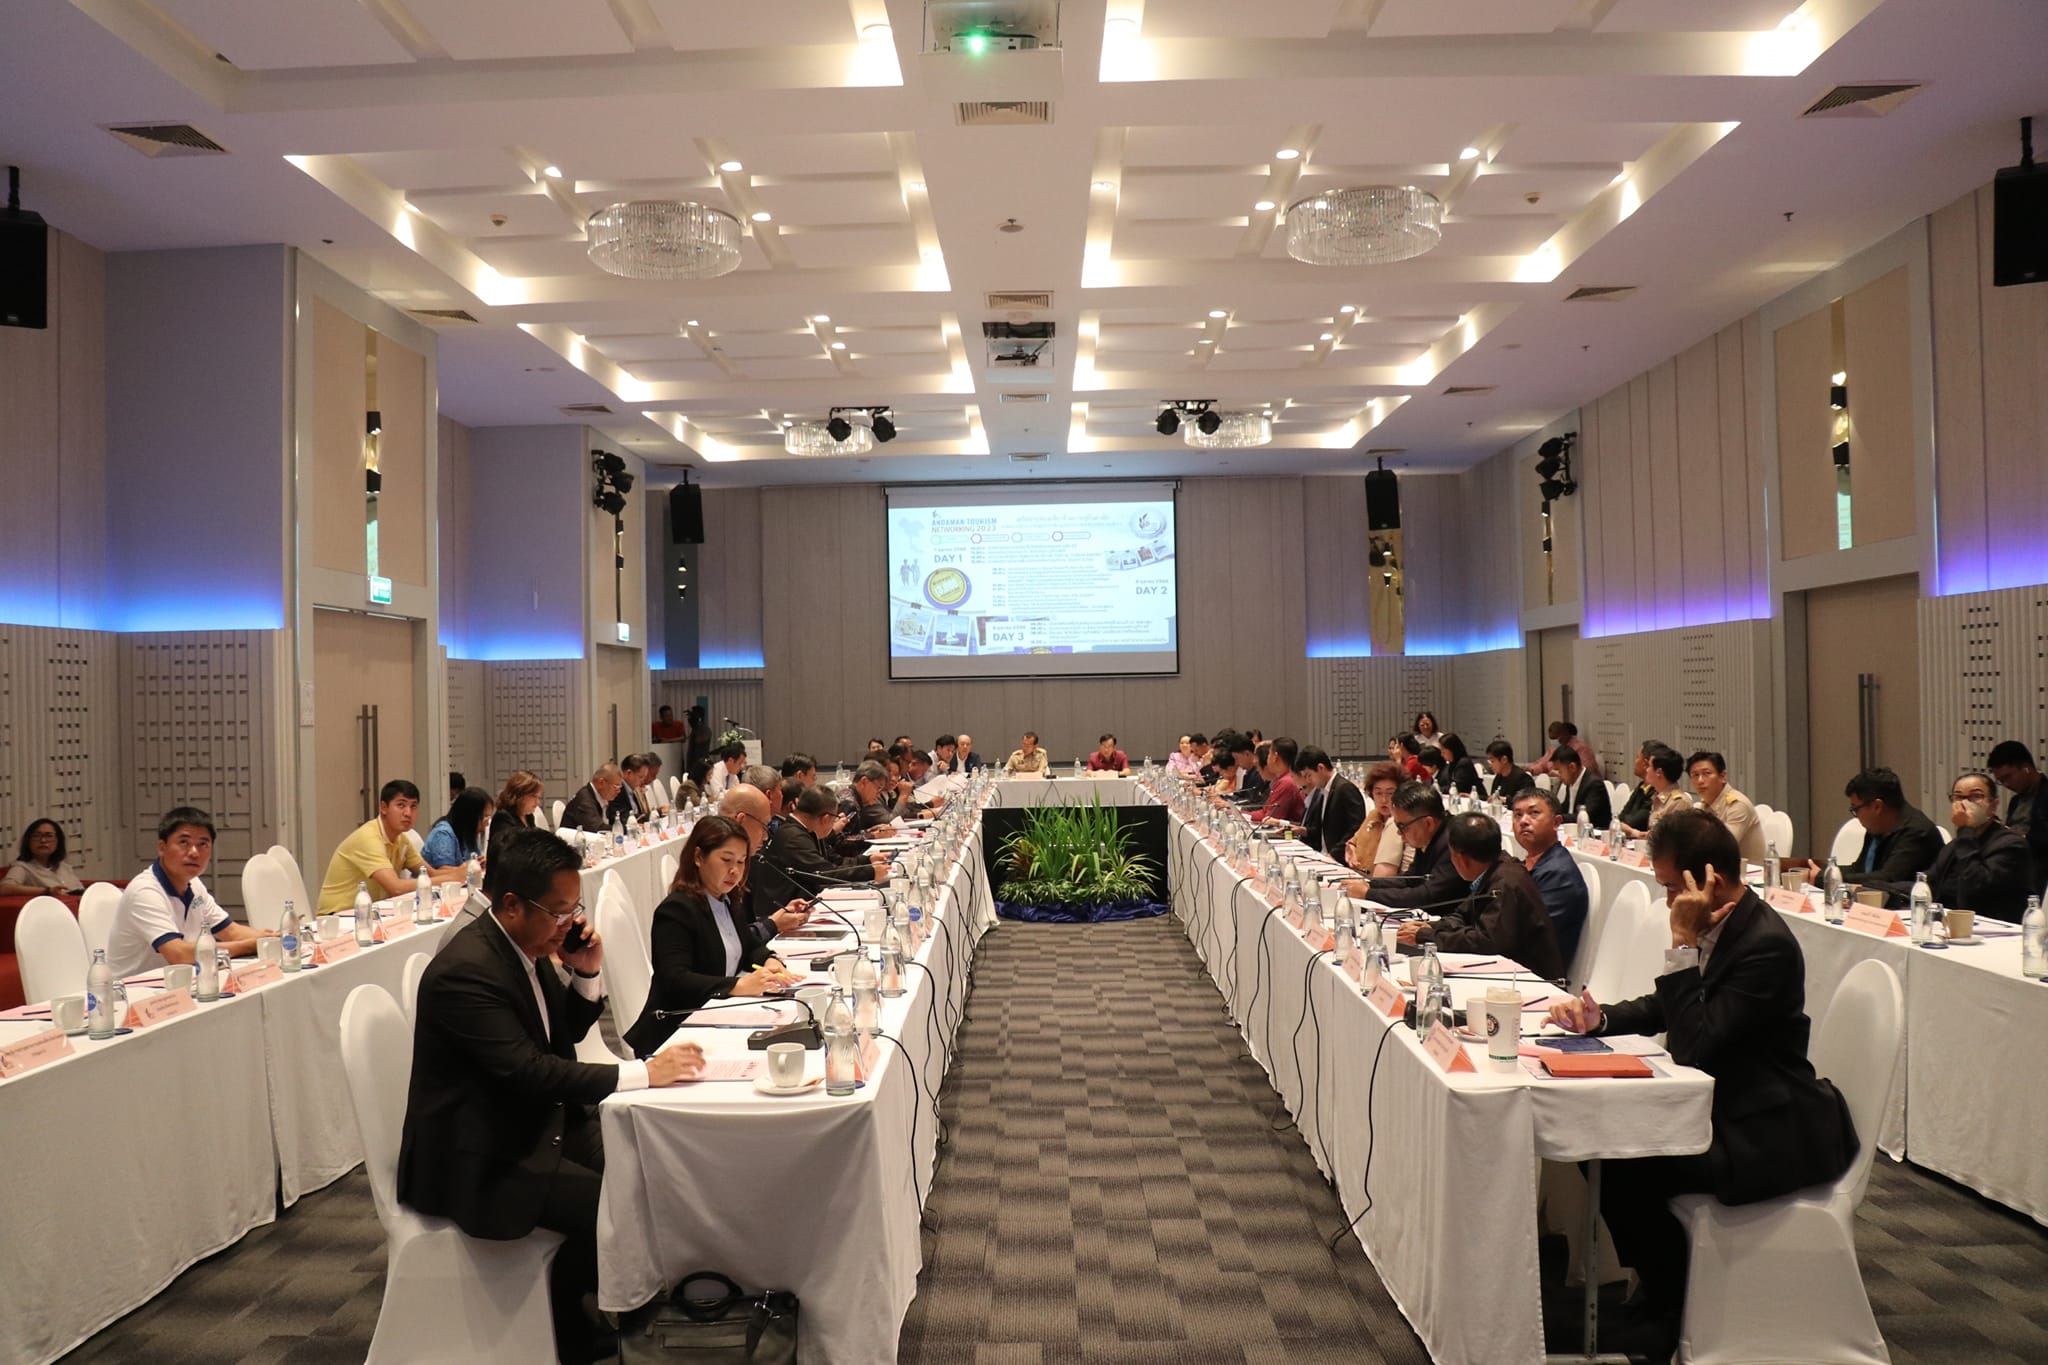 จังหวัดภูเก็ตเป็นเจ้าภาพจัดการประชุมคณะกรรมการร่วมภาครัฐและเอกชนเพื่อแก้ไขปัญหาทางเศรษฐกิจ (กรอ.) กลุ่มจังหวัดภาคใต้ฝั่งอันดามัน เตรียมจัดงาน Andaman Tourism Networking 2023 วันที่ 7 - 9 ตุลาคม นี้